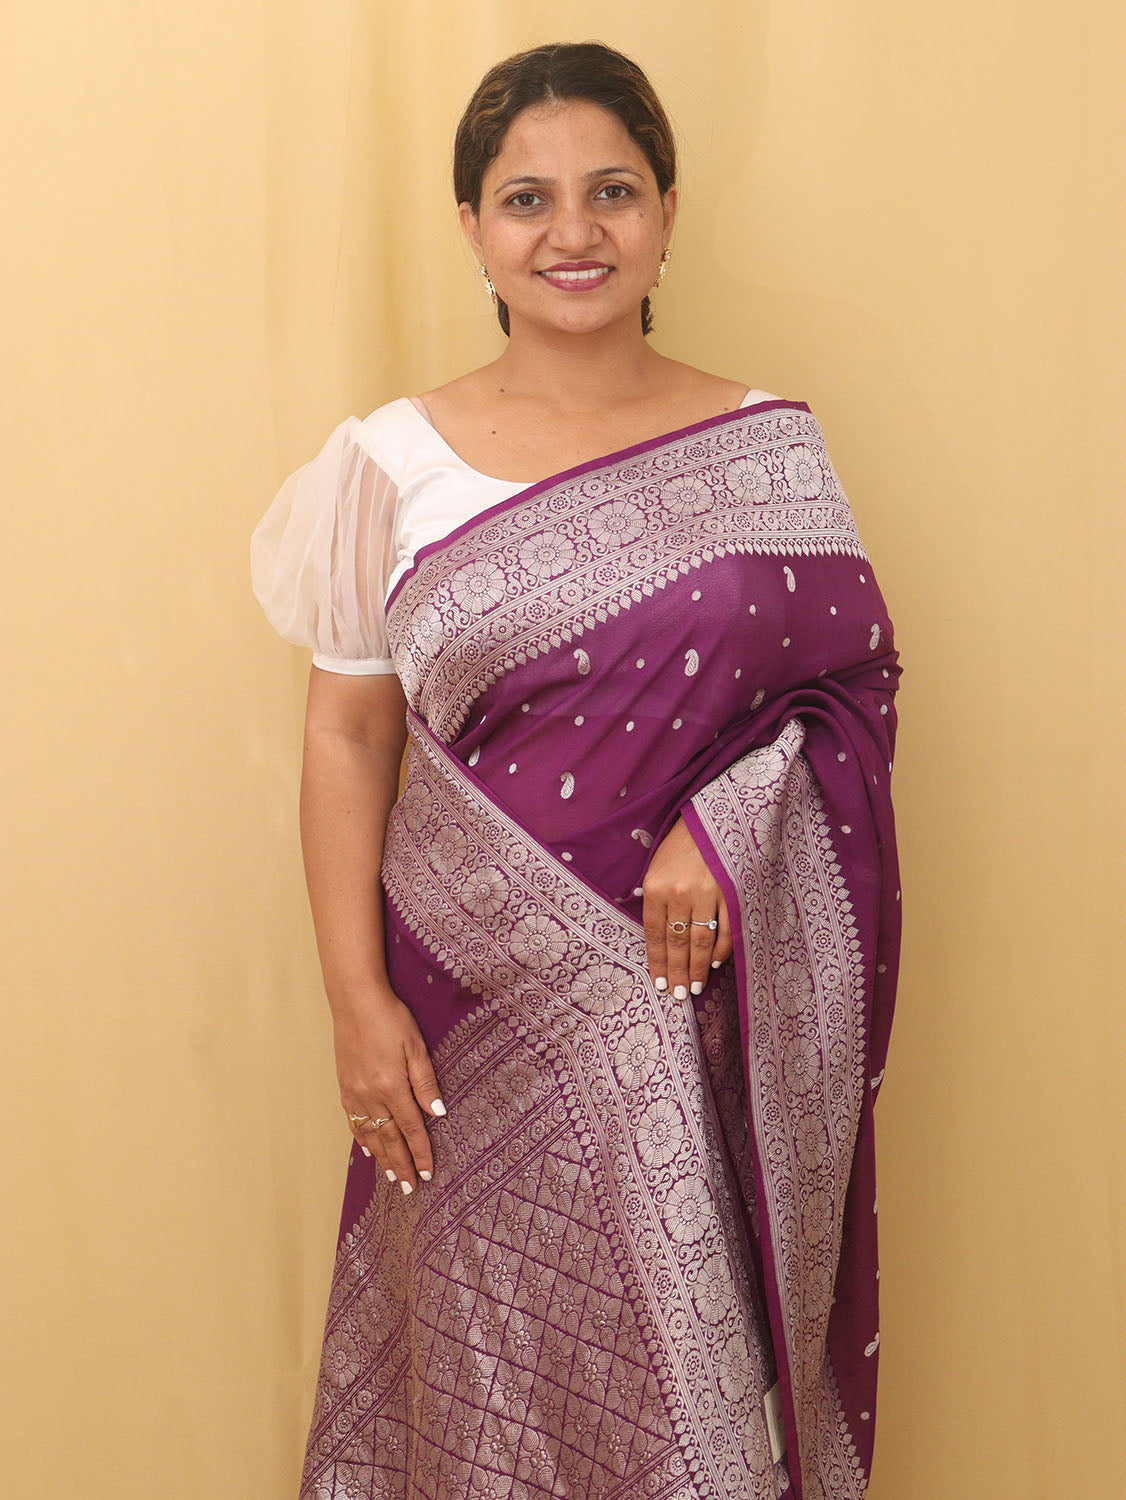 Exquisite Purple Handloom Banarasi Georgette Saree with Silver Zari - Luxurion World